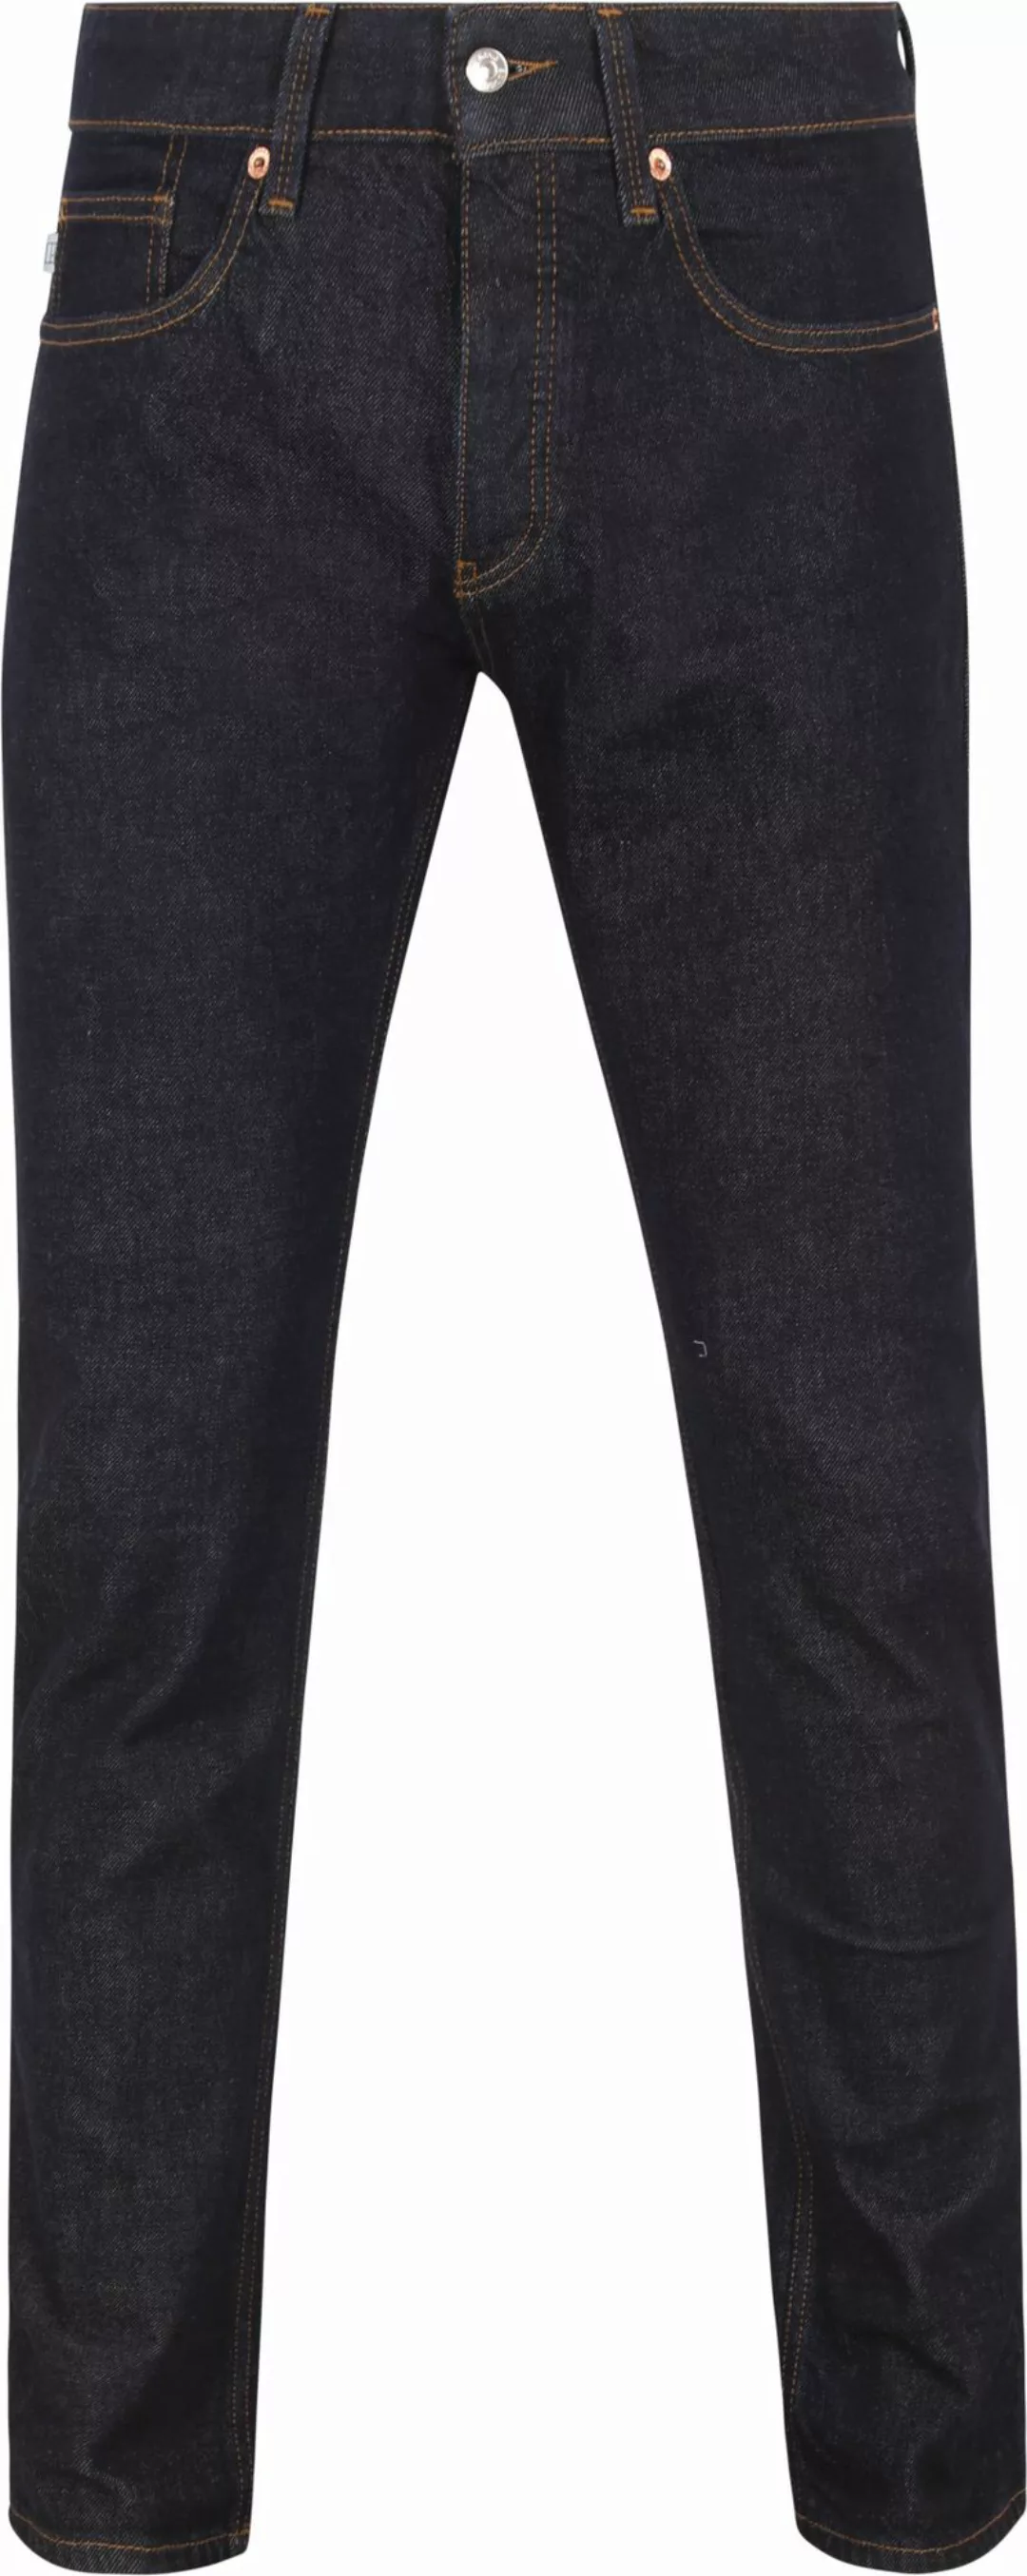 King Essentials The Jason Jeans Navy - Größe W 31 - L 34 günstig online kaufen